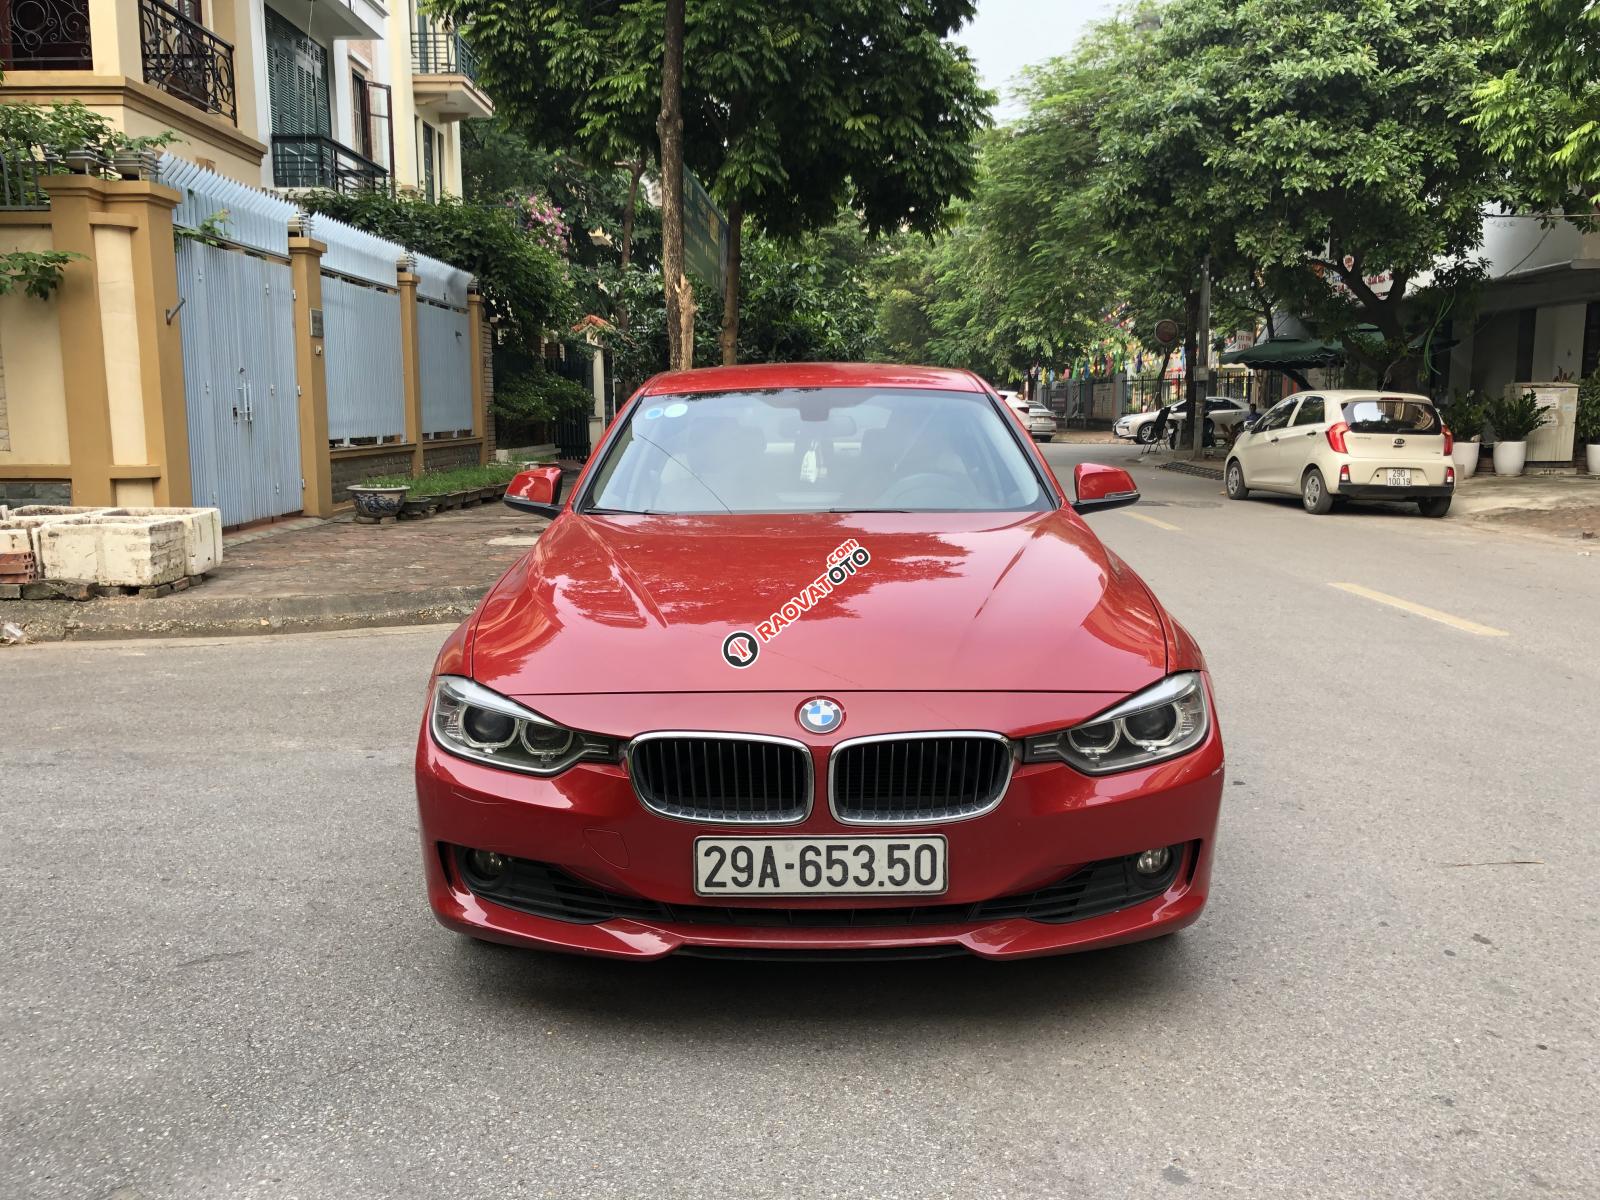 Chính chủ cần bán BMW 3 Series 320i đời 2012, màu đỏ, xe nhập liên hệ - 0989883329-2